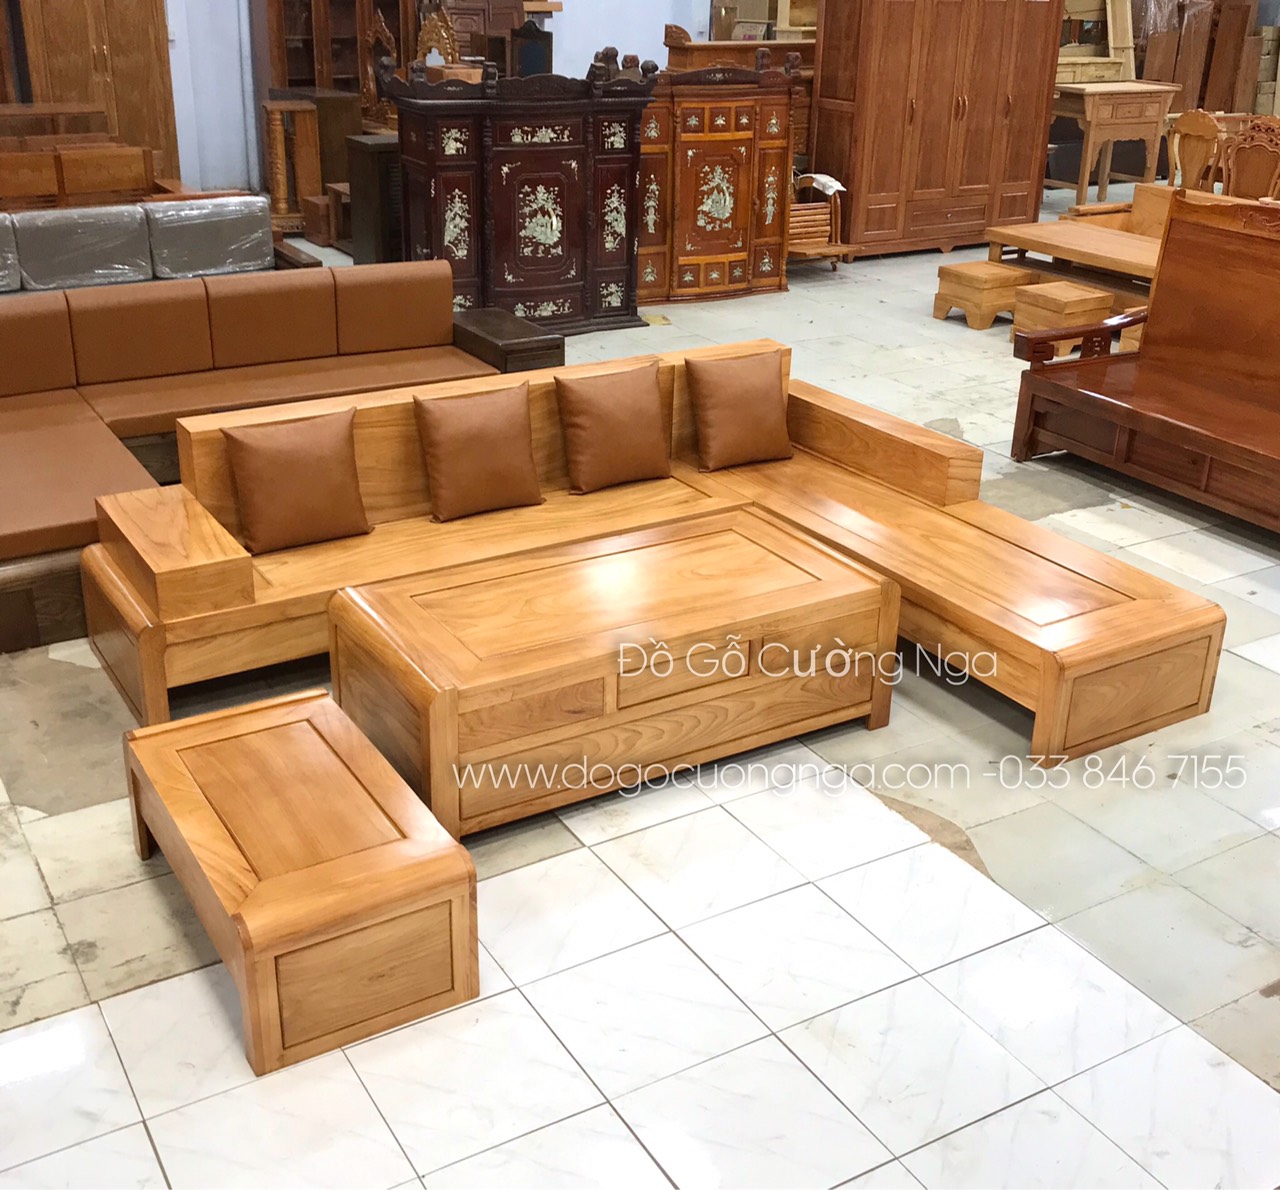 Bộ bàn ghế sofa gỗ gõ đỏ góc L với mẫu chân cuốn 2m82x2m12 vế phải là giải pháp hoàn hảo cho phòng khách của bạn. Với kiểu dáng độc đáo và chất lượng đáng tin cậy, sản phẩm này sẽ mang đến cho không gian sống của bạn sự hoàn thiện và tuyệt vời. Hãy xem hình ảnh để khám phá chi tiết của bộ bàn ghế này.